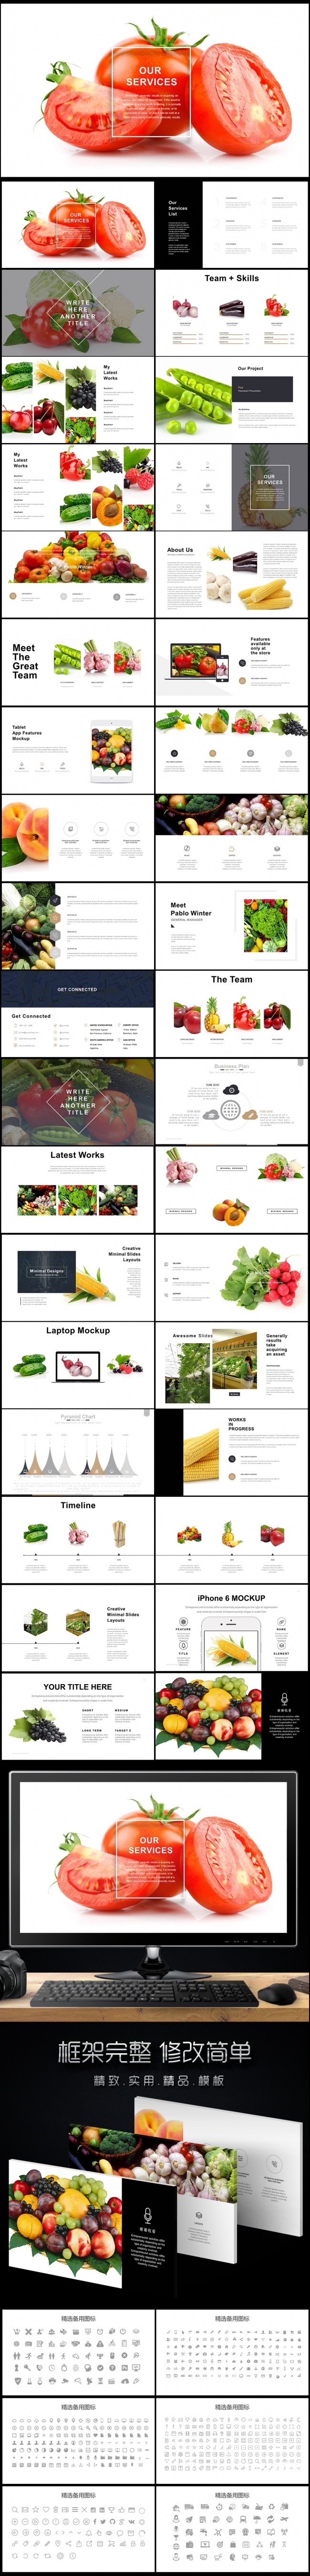 生物科技农业种植水果蔬菜粮食作物PPT图片下载